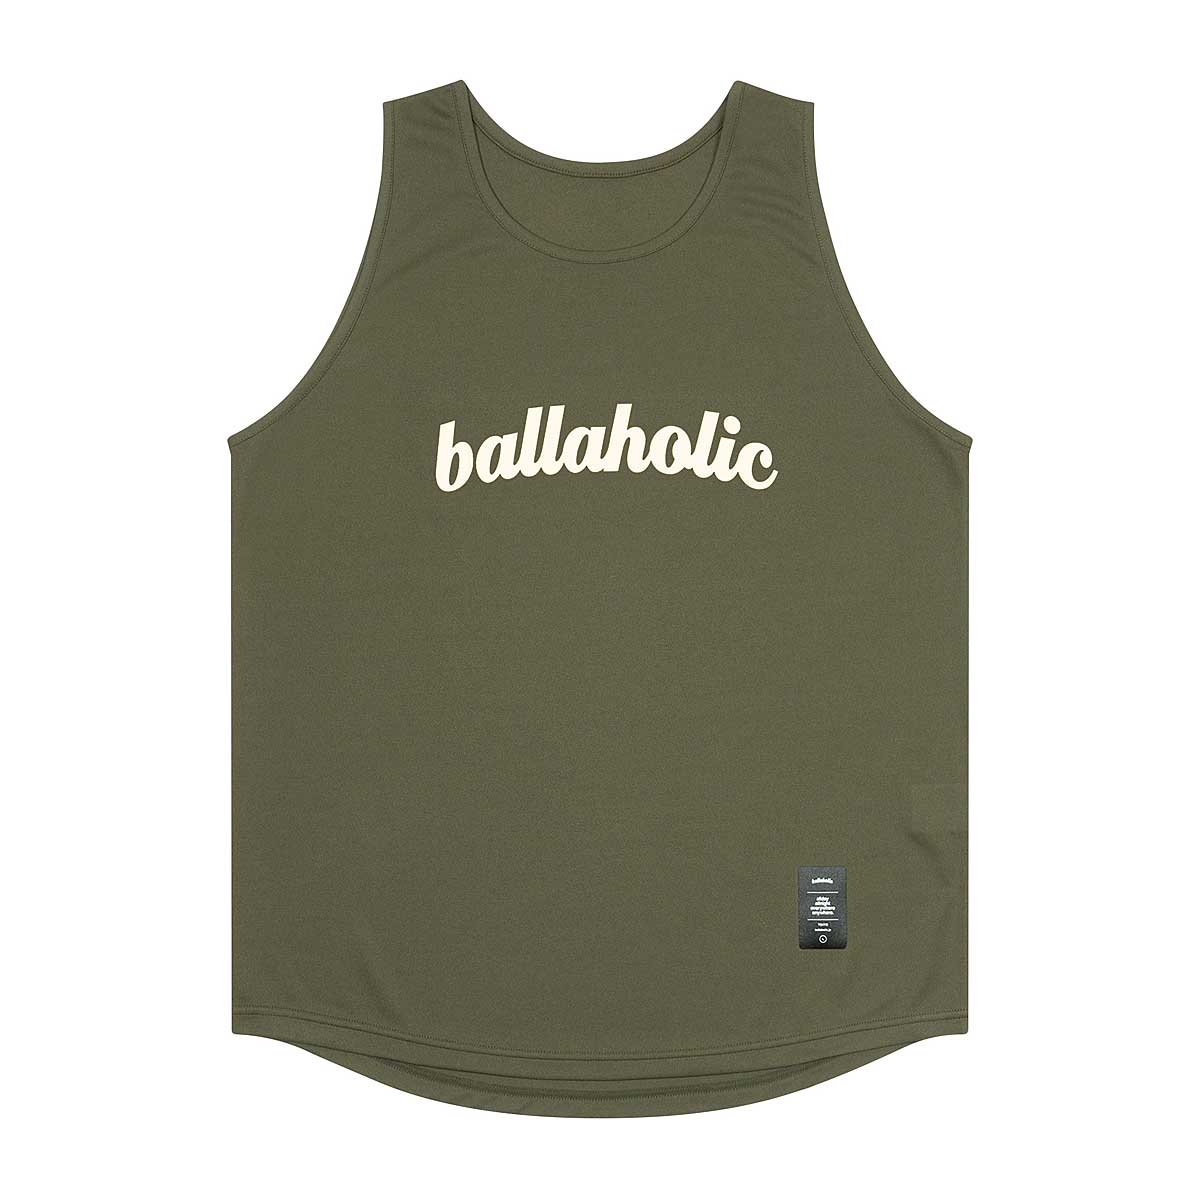 Image of Ballaholic Logo Tank Top, Light Green/white